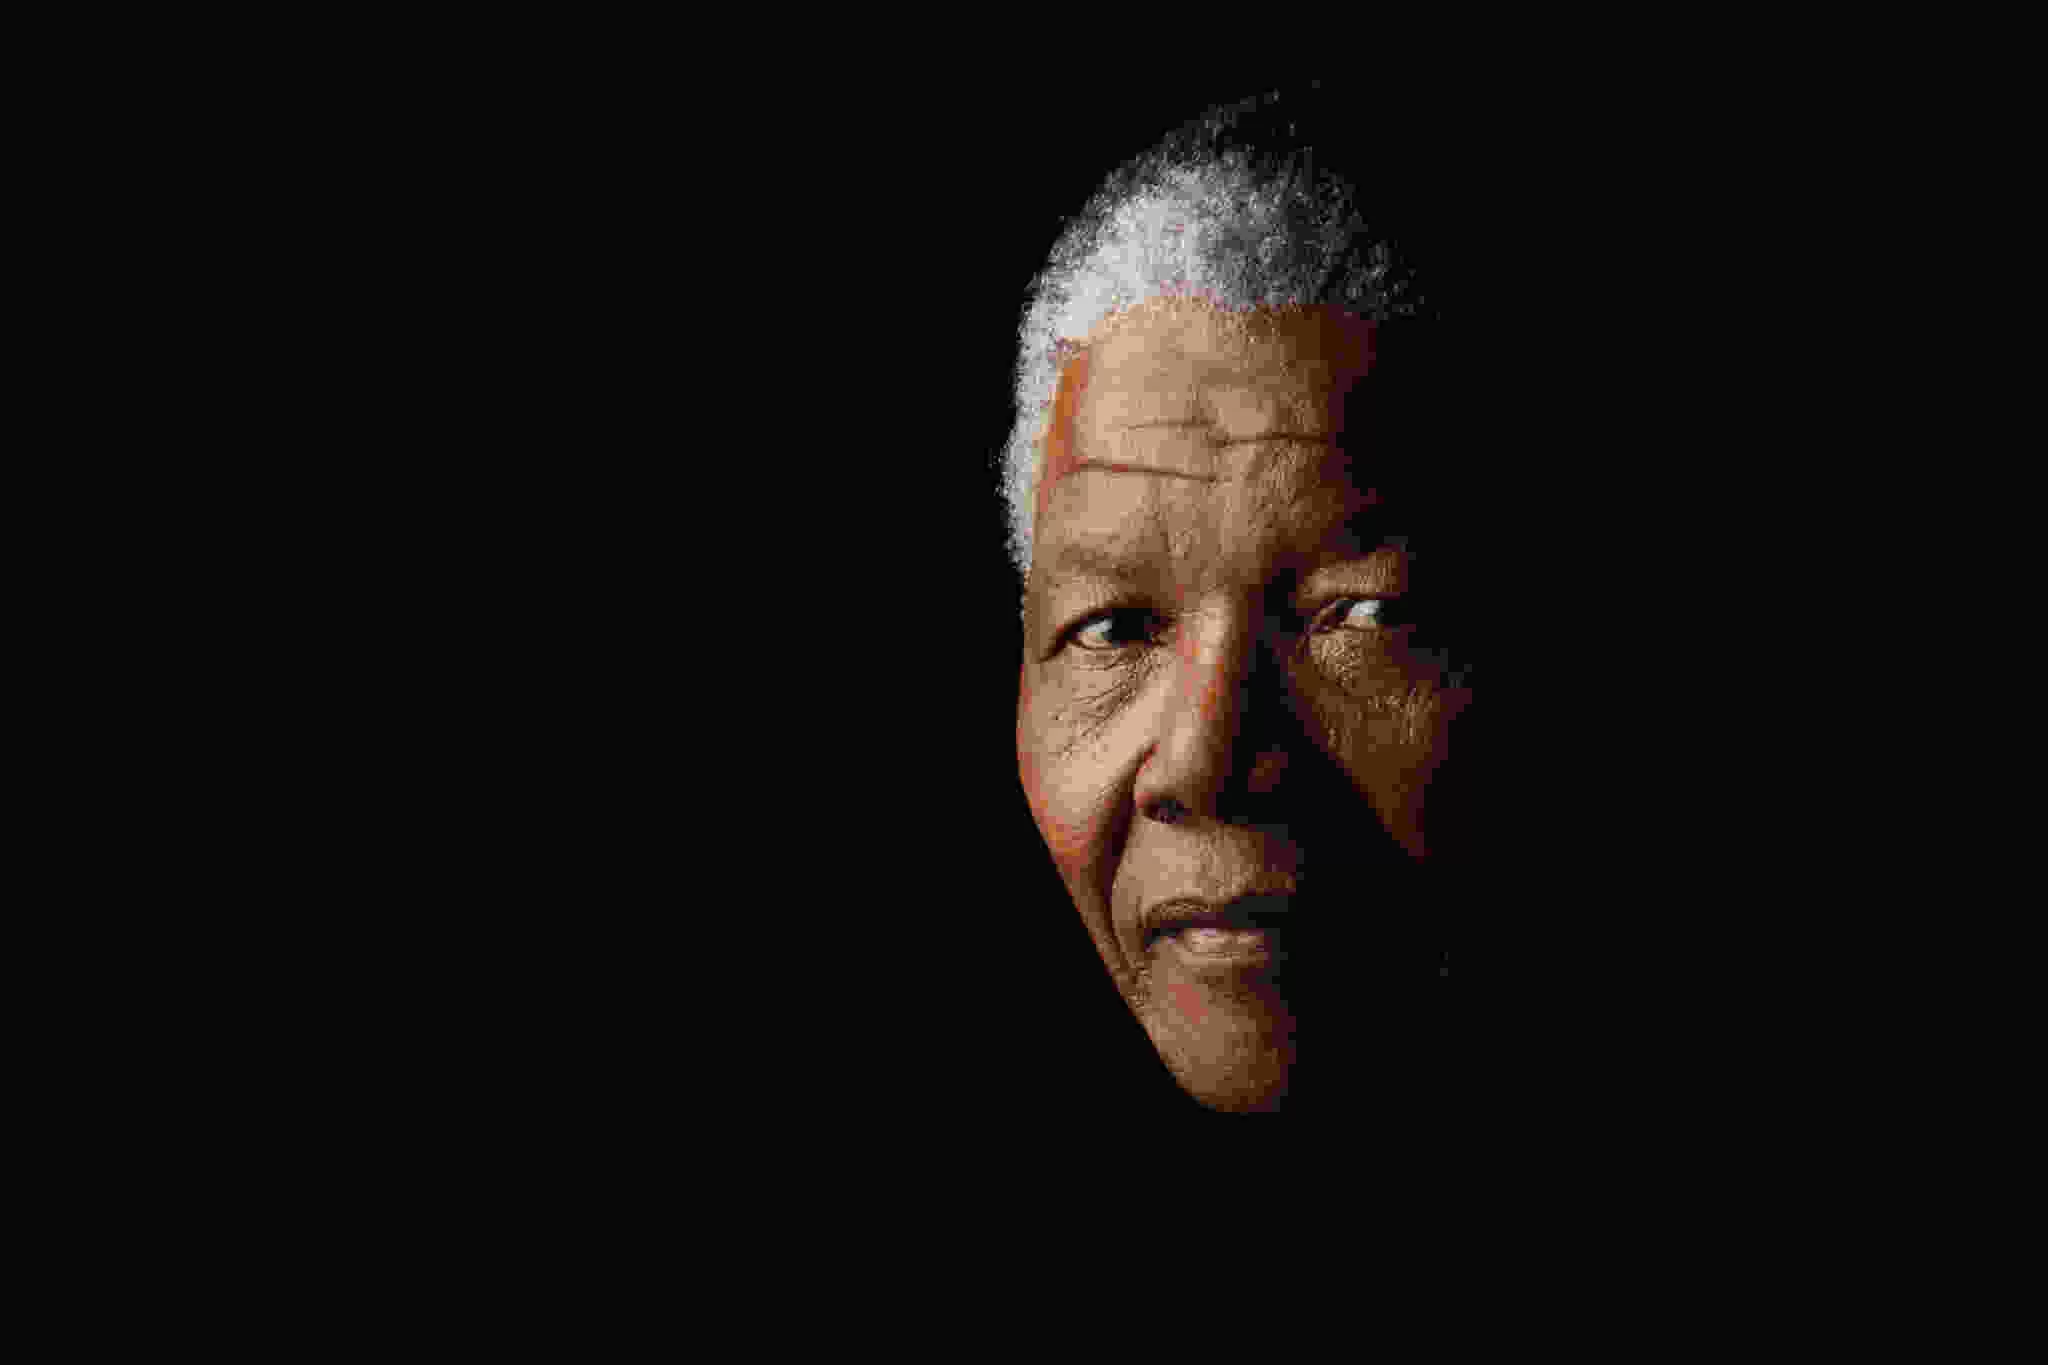 Nelson Mandela Day